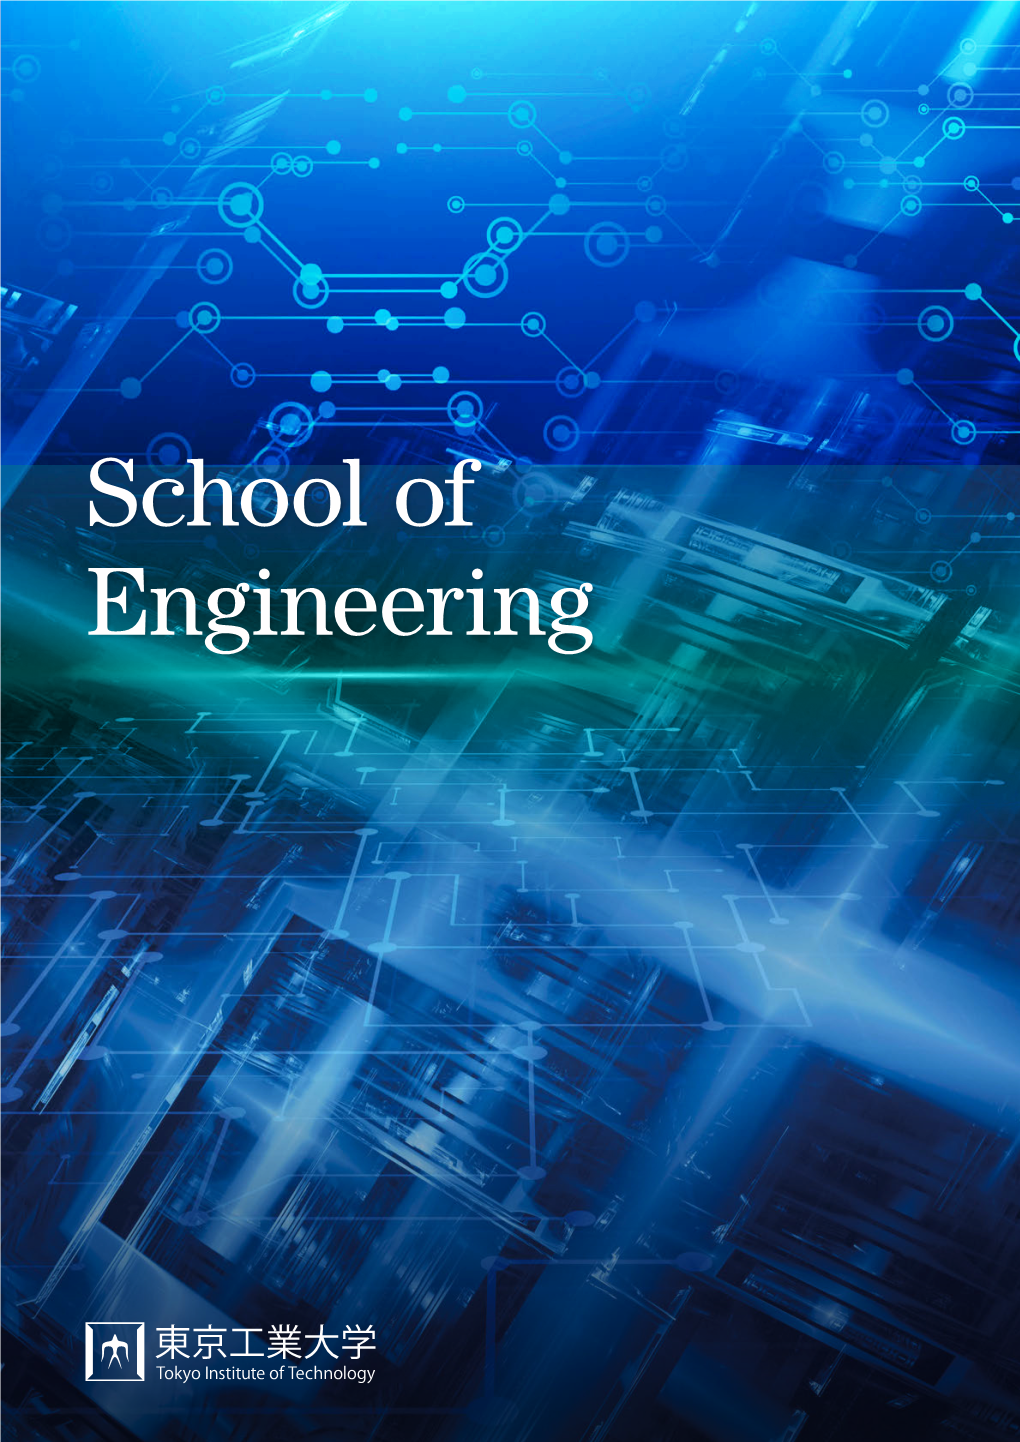 School of Engineering School of Engineering